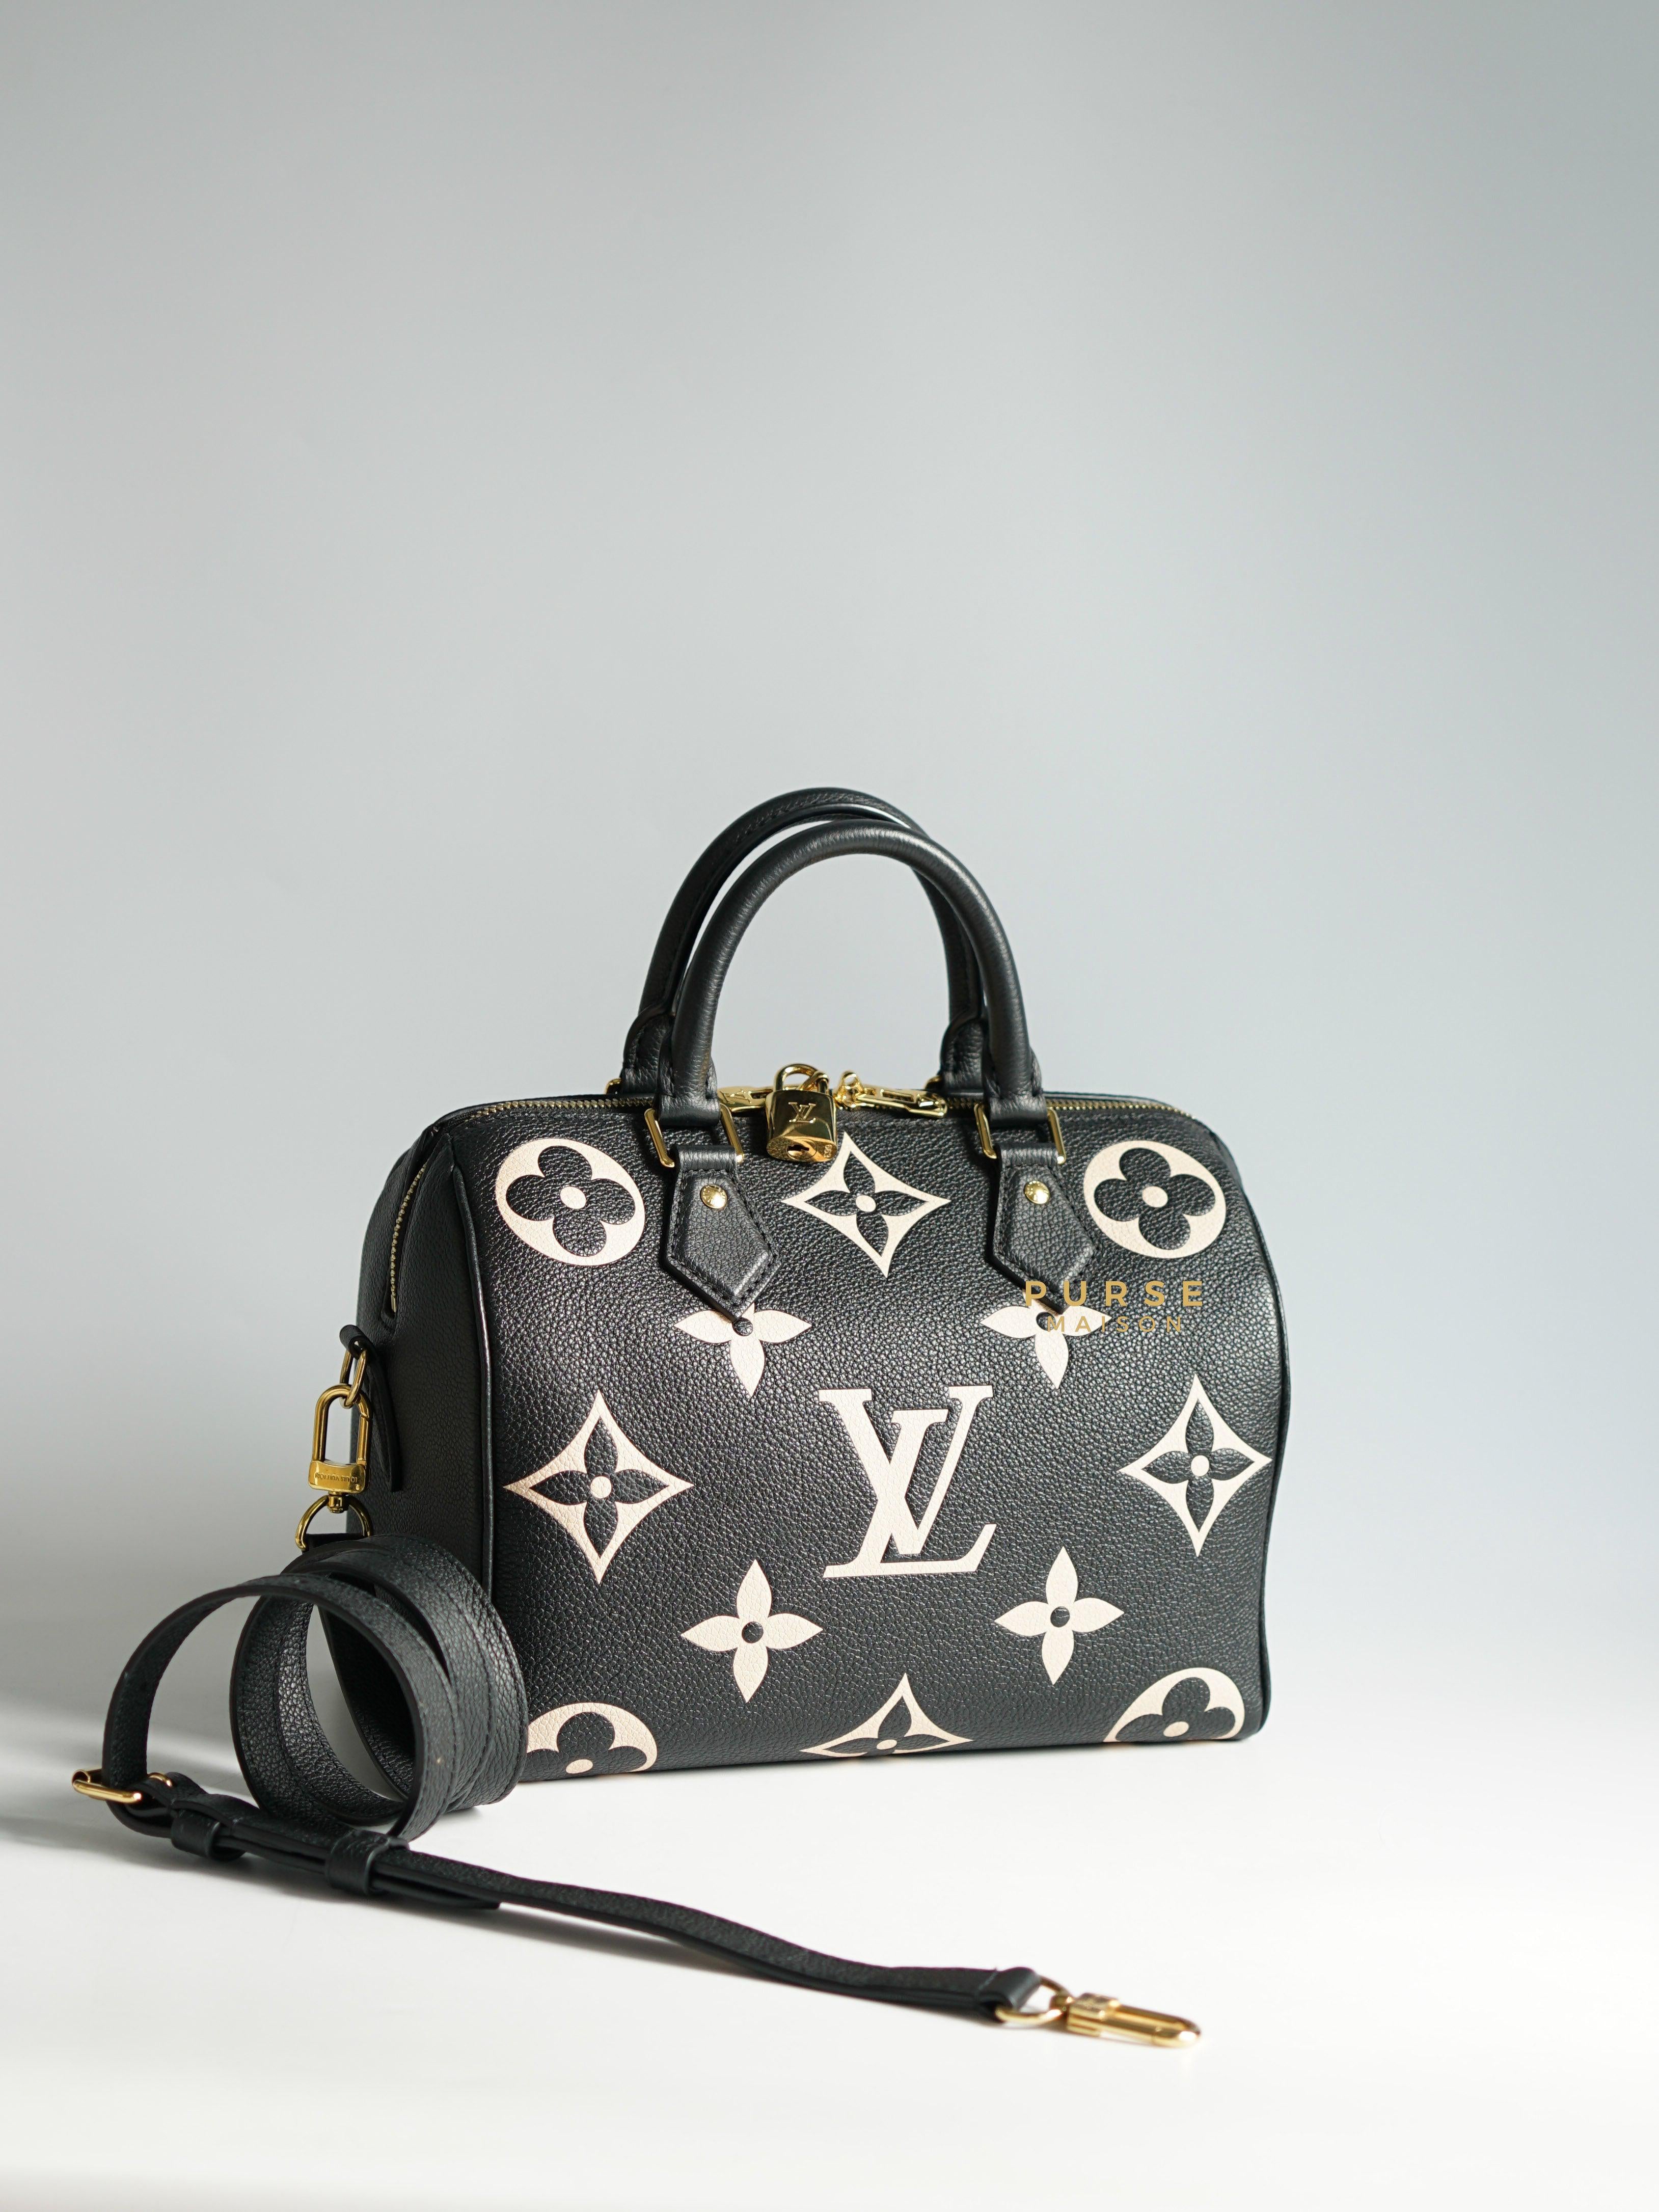 Louis Vuitton Speedy Bandouliere 25 Bicolor Monogram Empreinte Leather (Microchip) | Purse Maison Luxury Bags Shop